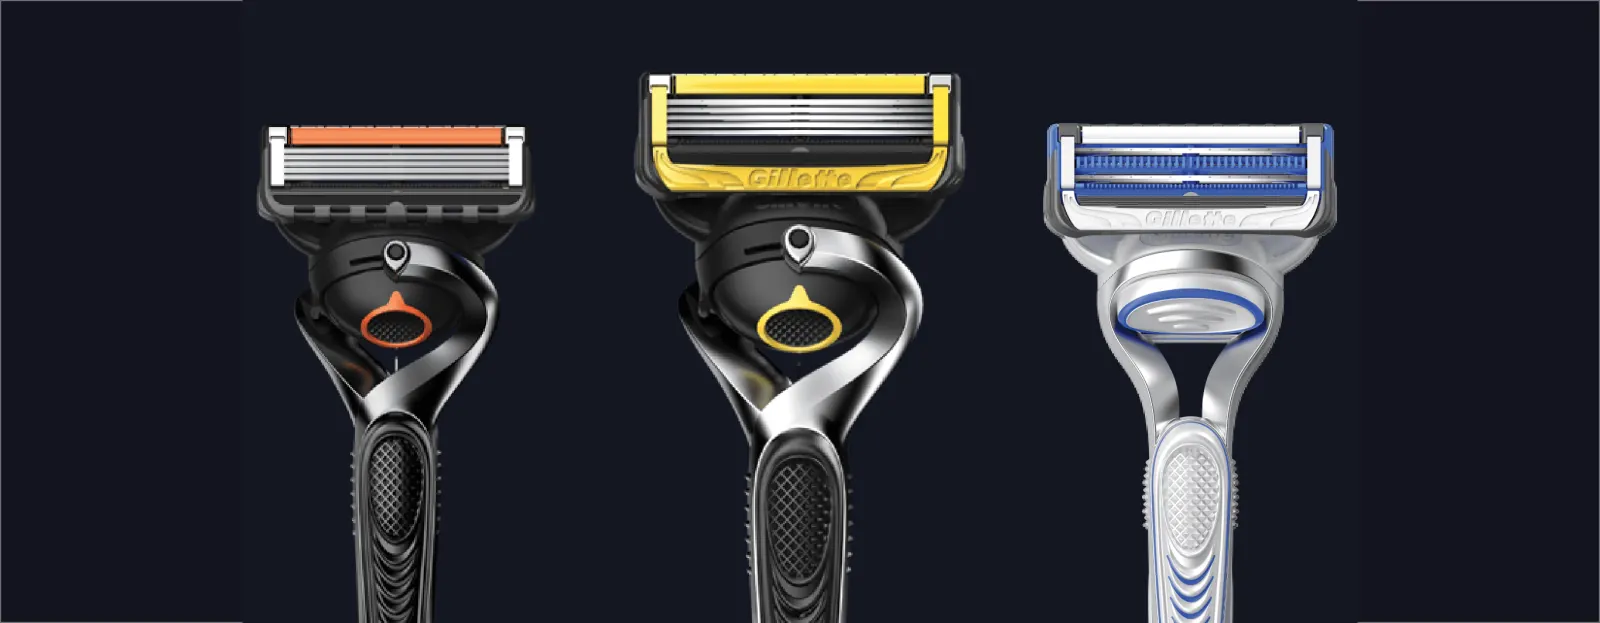 Personaliza tus mangos de afeitar y cuchillas Fusion